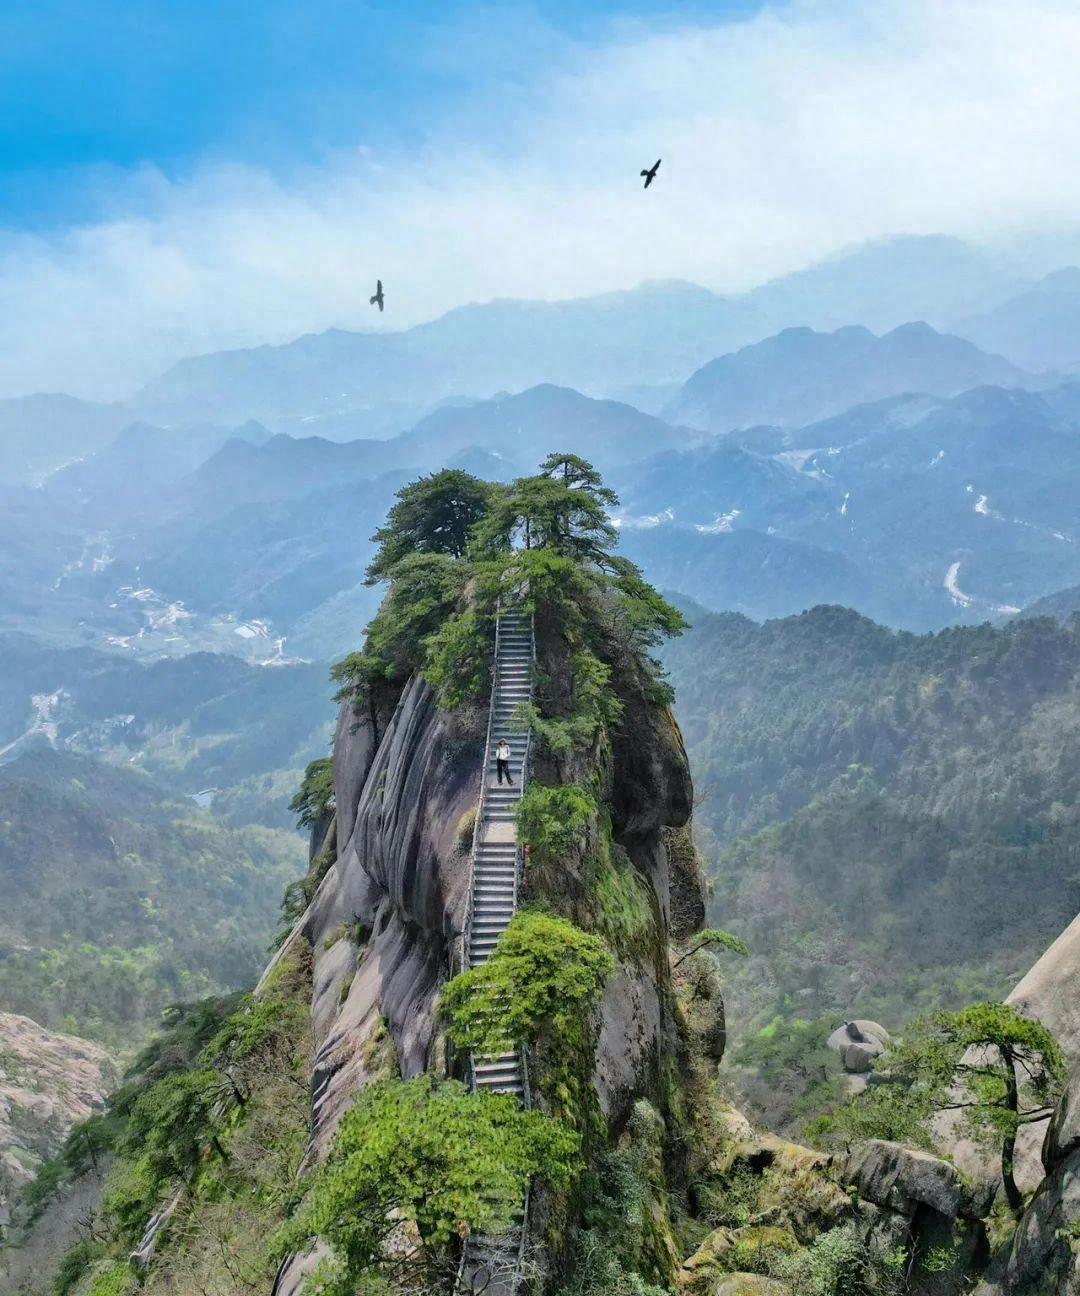 安徽安庆潜山天柱山:大自然的鬼斧神工 如果你渴望逃离城市的喧嚣